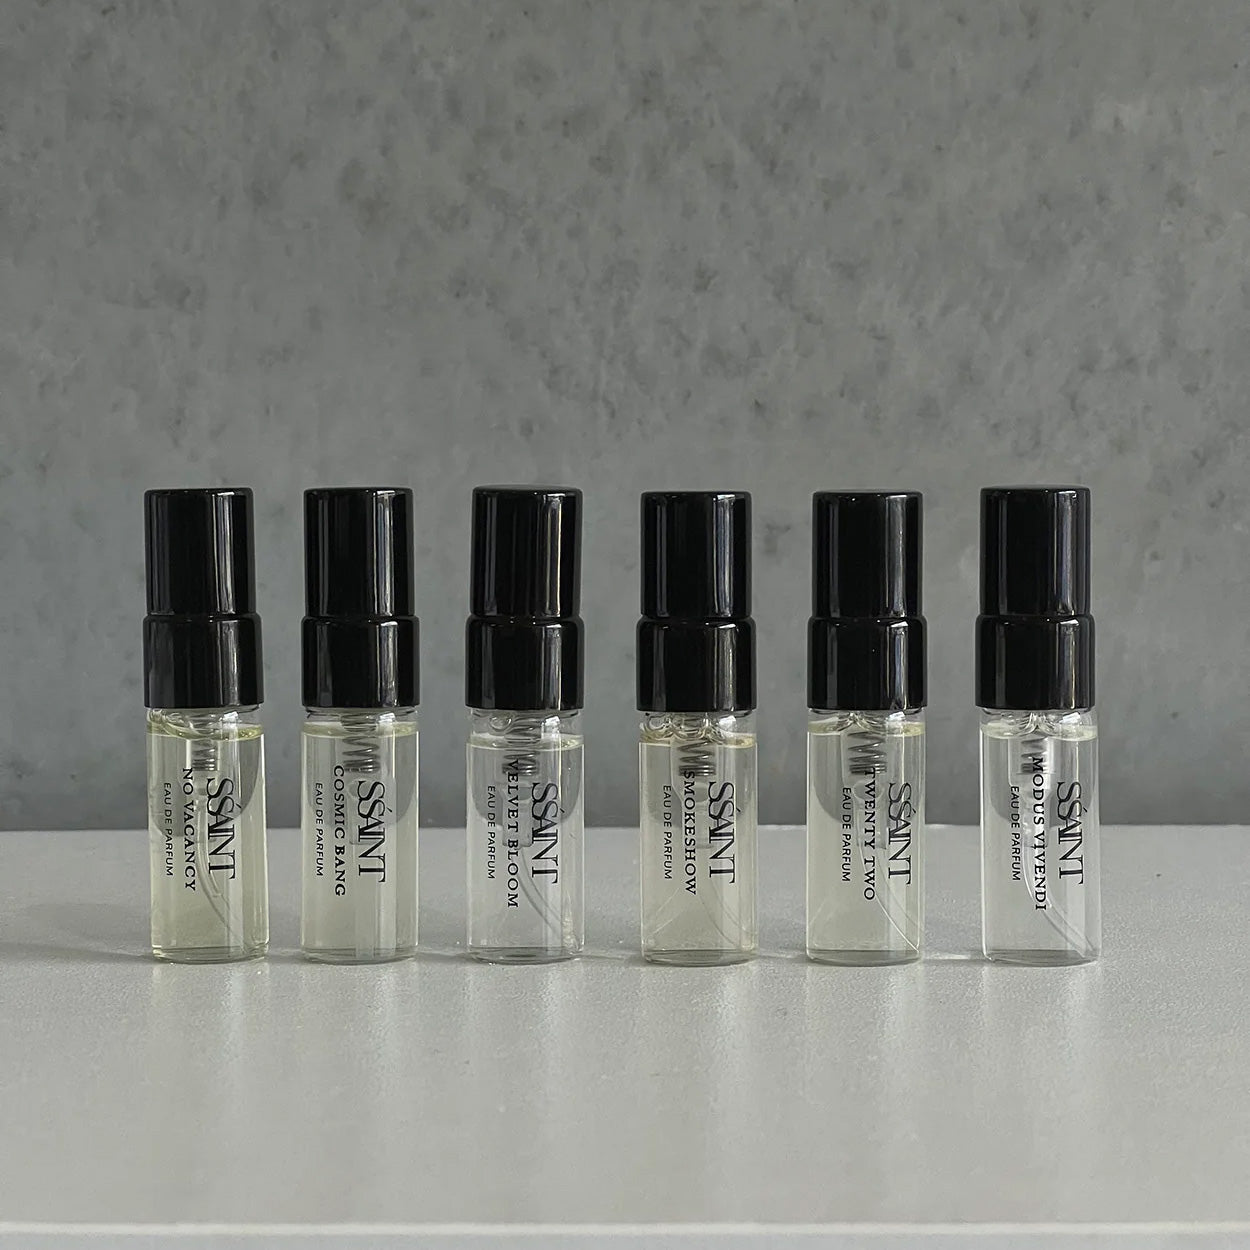 SŚAINT Parfum Discovery Set